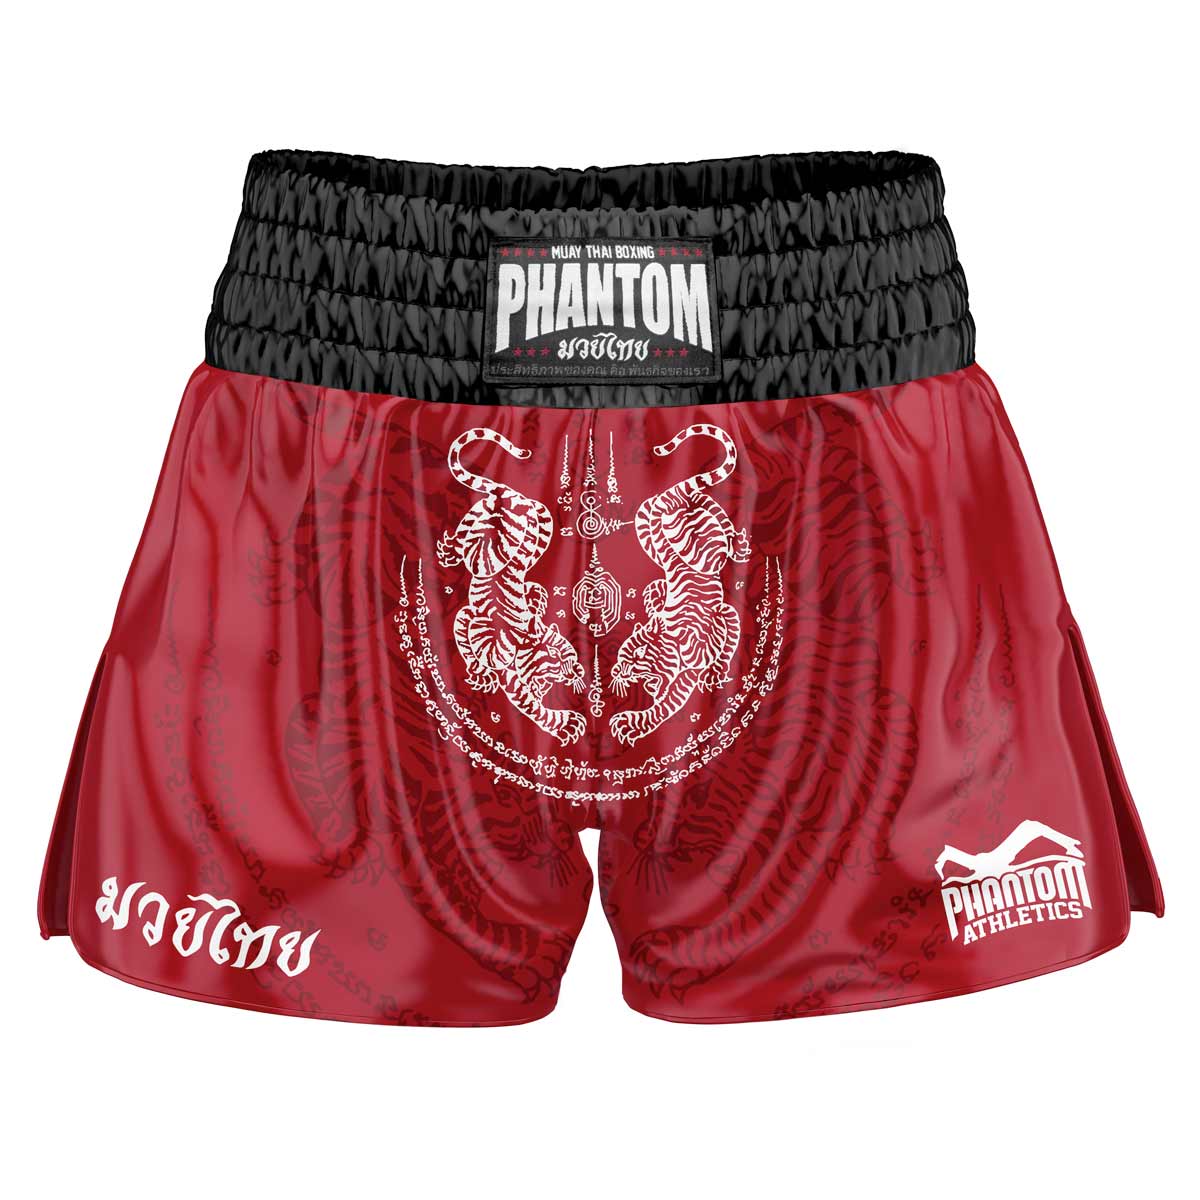 Spodenki Phantom Muay Thai SAK YANT w kolorze czerwonym. Satynowa tkanina w starym stylu z tradycyjnym wzorem tygrysa nadaje oryginalny klimat Tajlandii. W zwykłej jakości Phantom Athletics . Idealny na treningi i zawody boksu tajskiego.